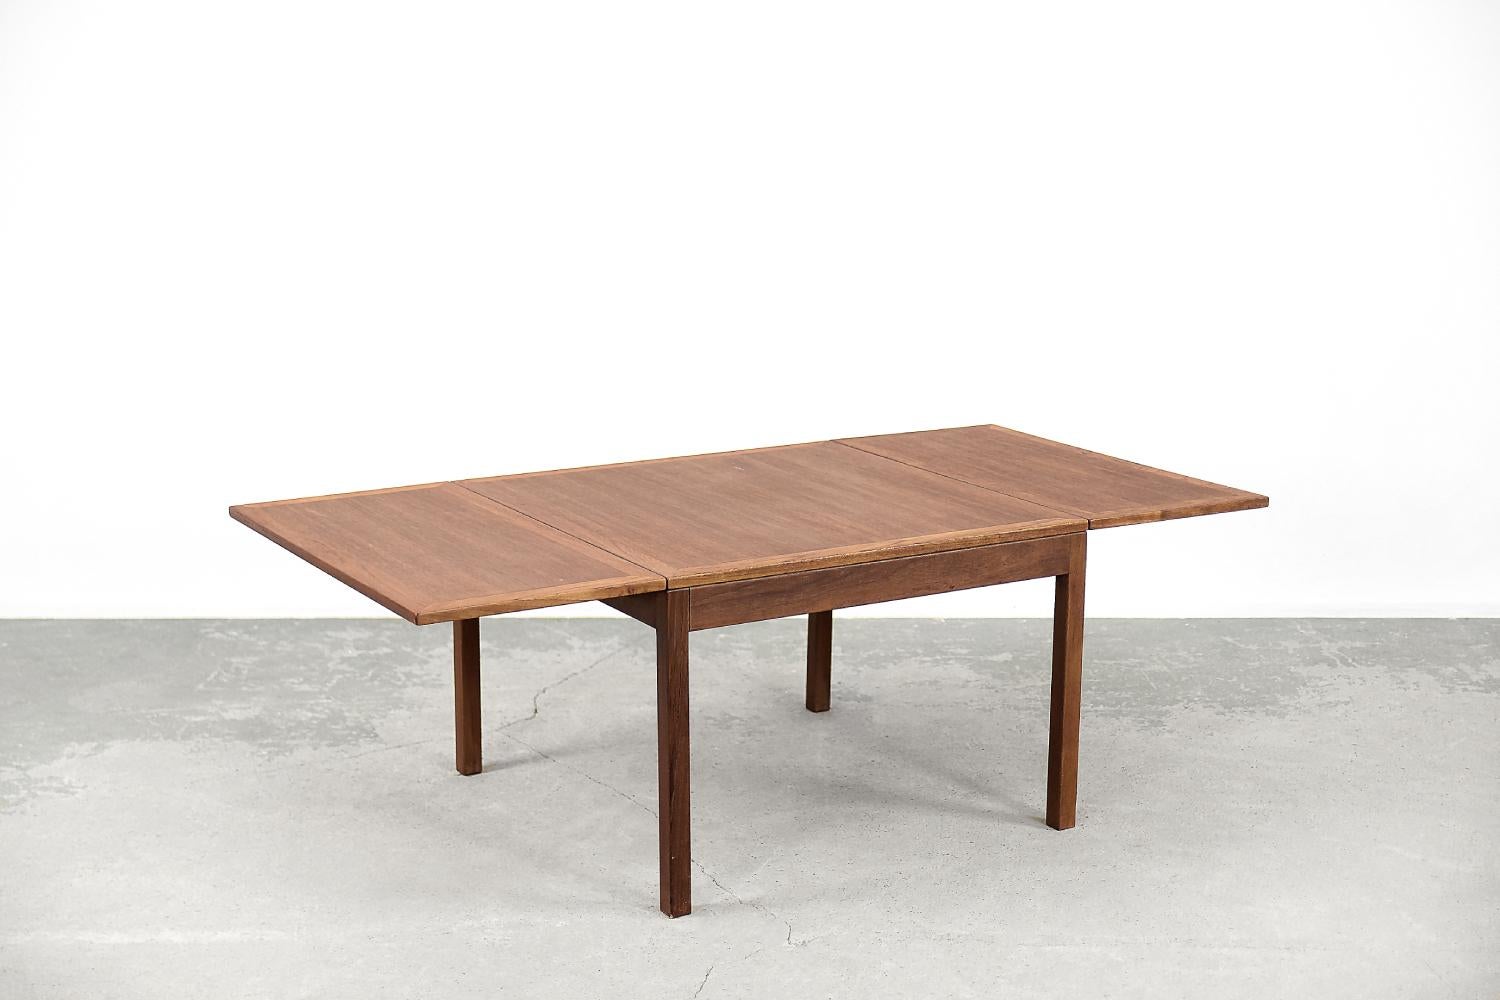 Cette table basse extensible a été conçue par Børge Mogensen pour la manufacture danoise Fredericia Stolefabrik dans les années 1960. Numéro de catalogue 5362. Table en teck de couleur brune et chaude. Le bois de teck est très durable, il provient